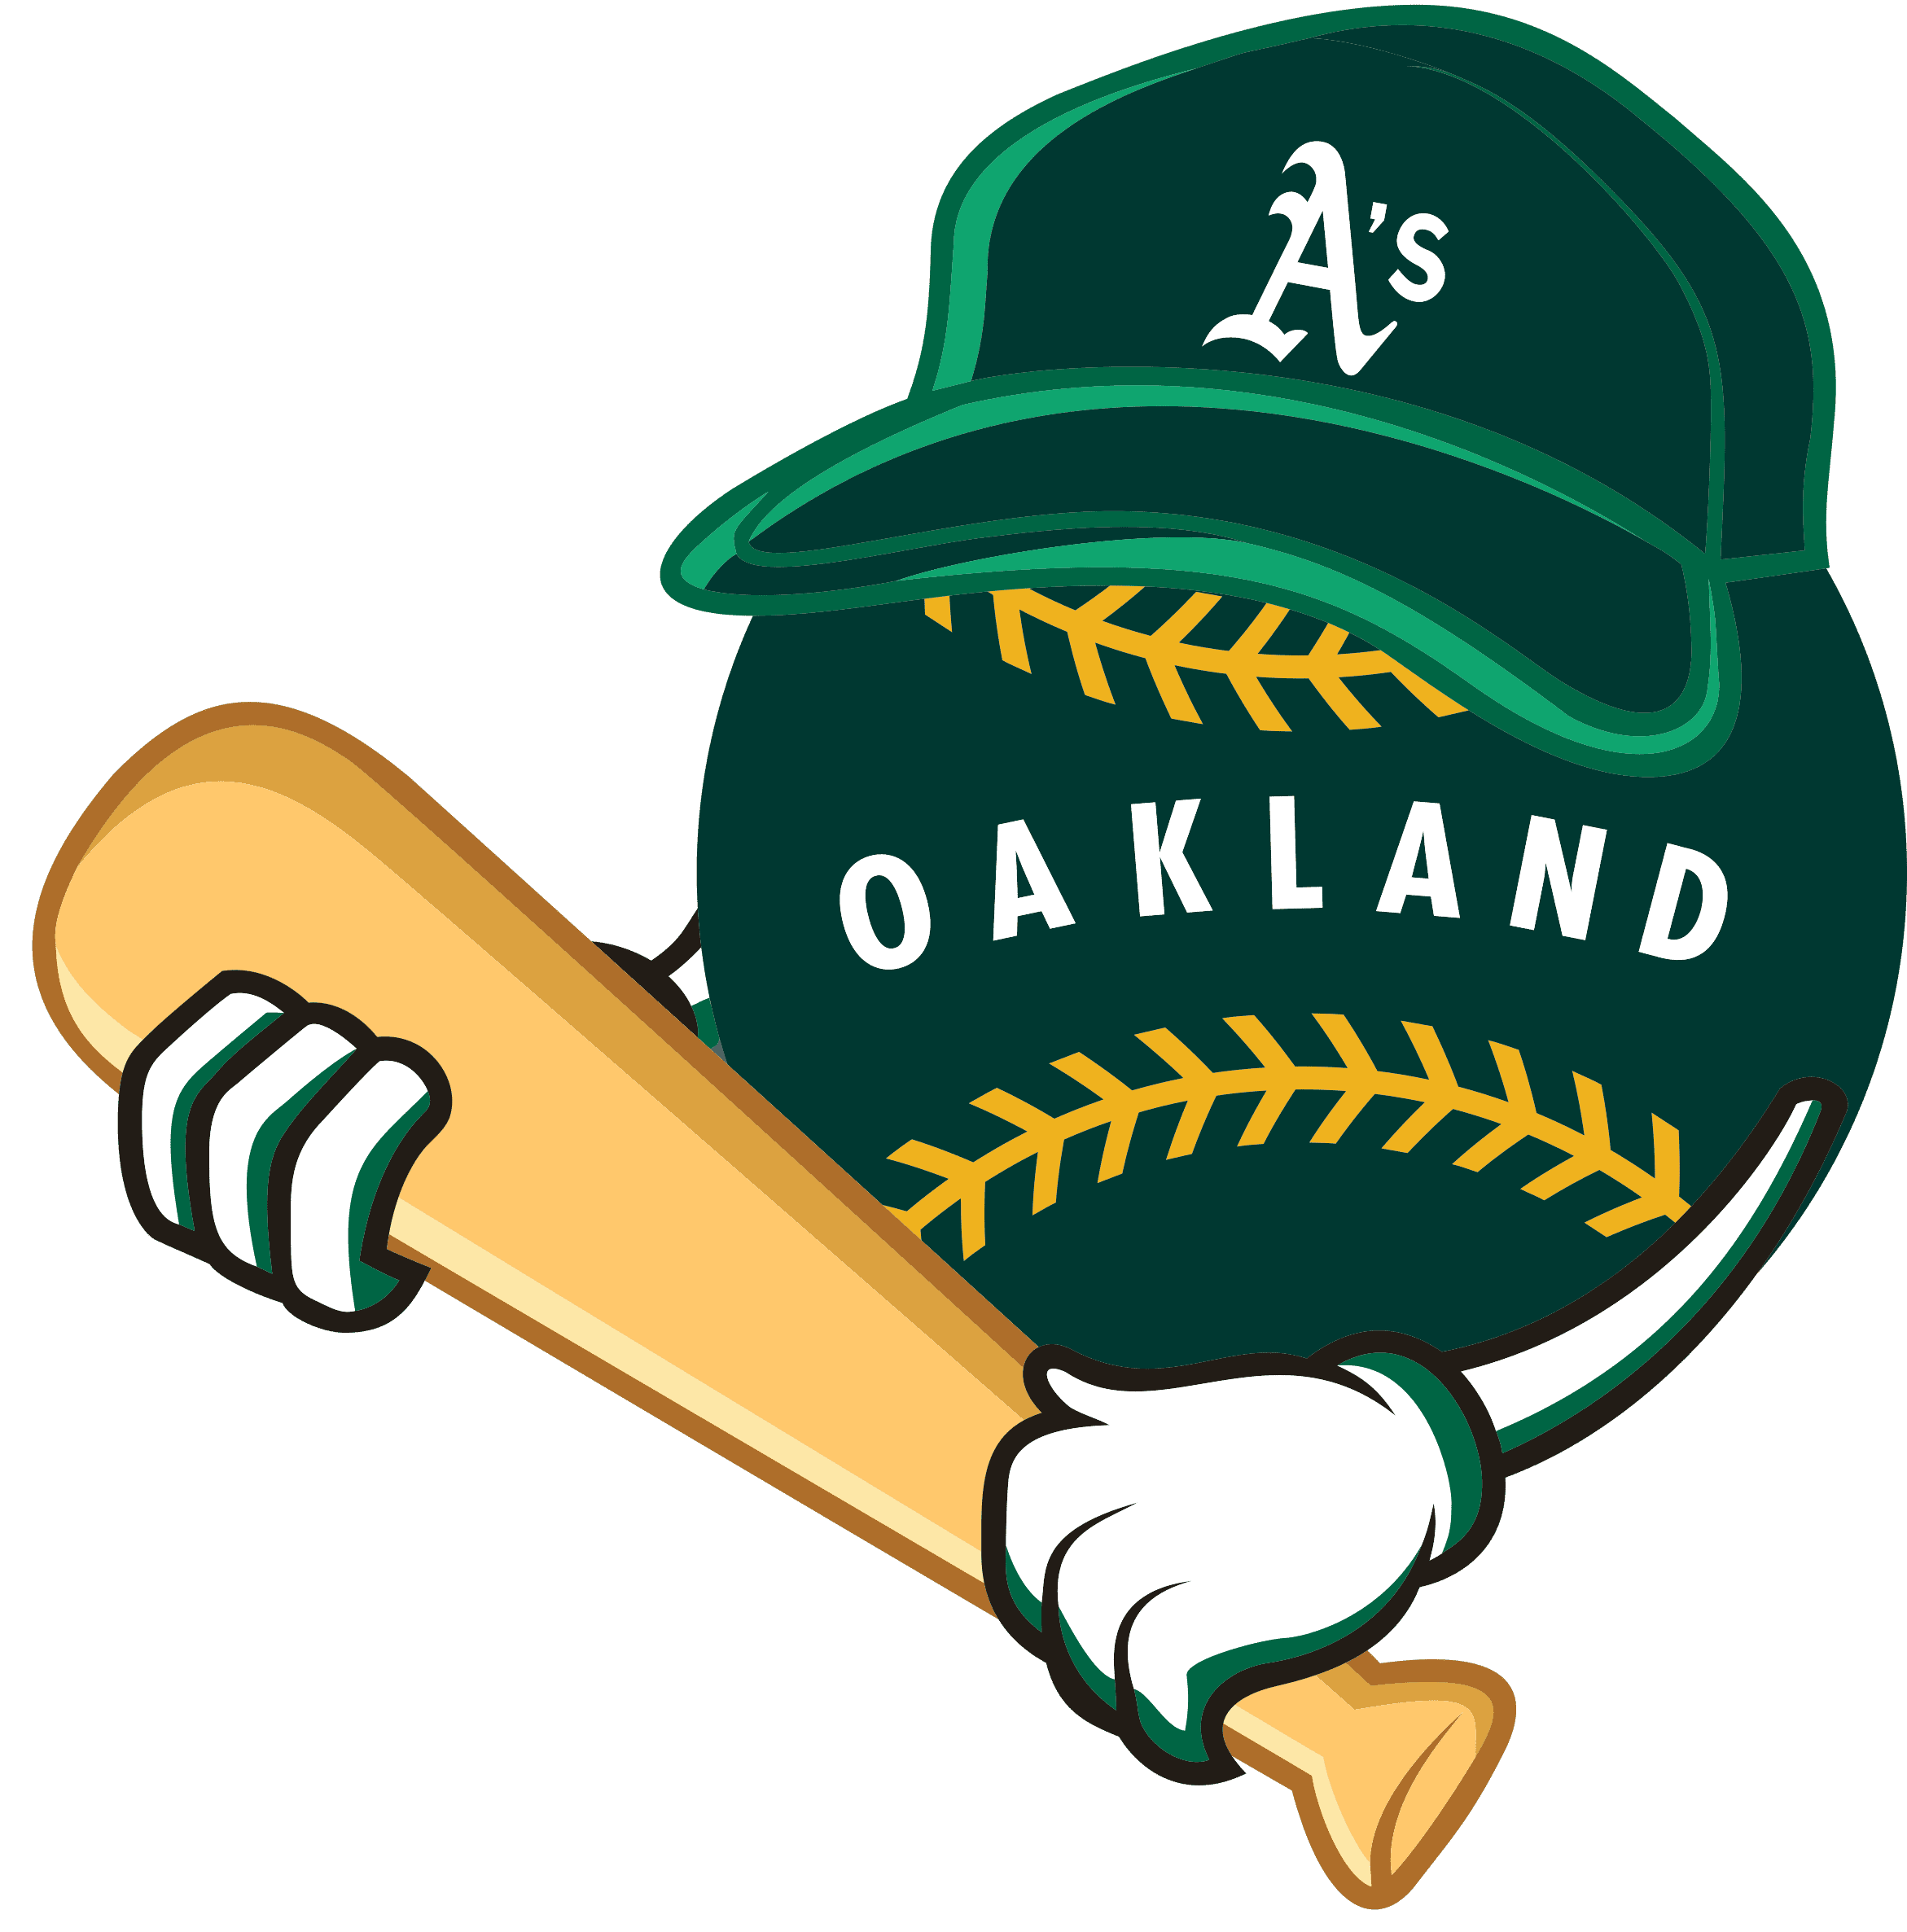 Oakland Athletics Oakland coliseum Major league baseball logo